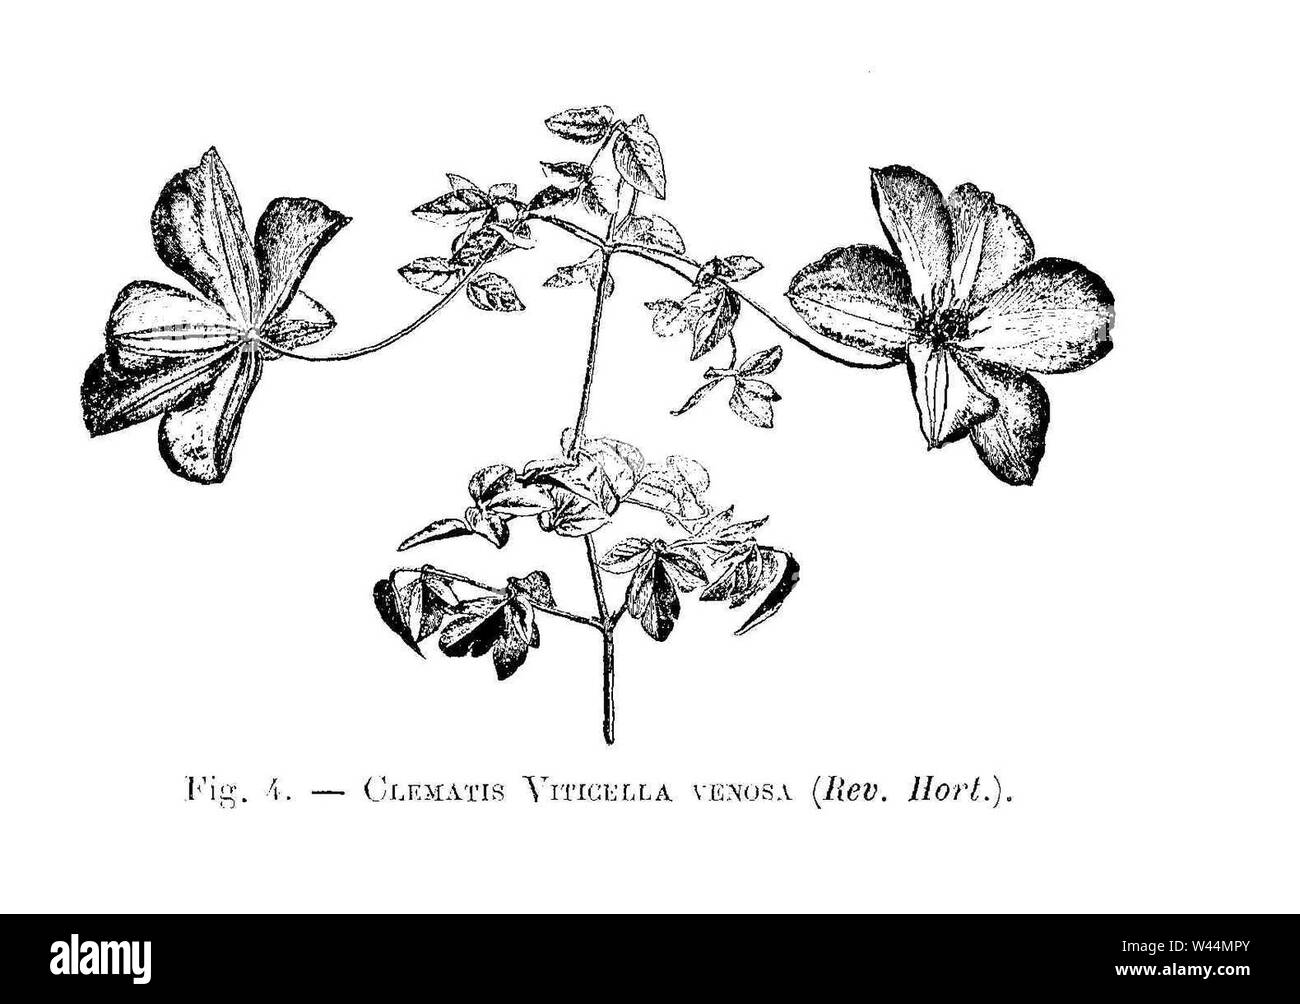 Clematis viticella venosa (dessin). Stock Photo